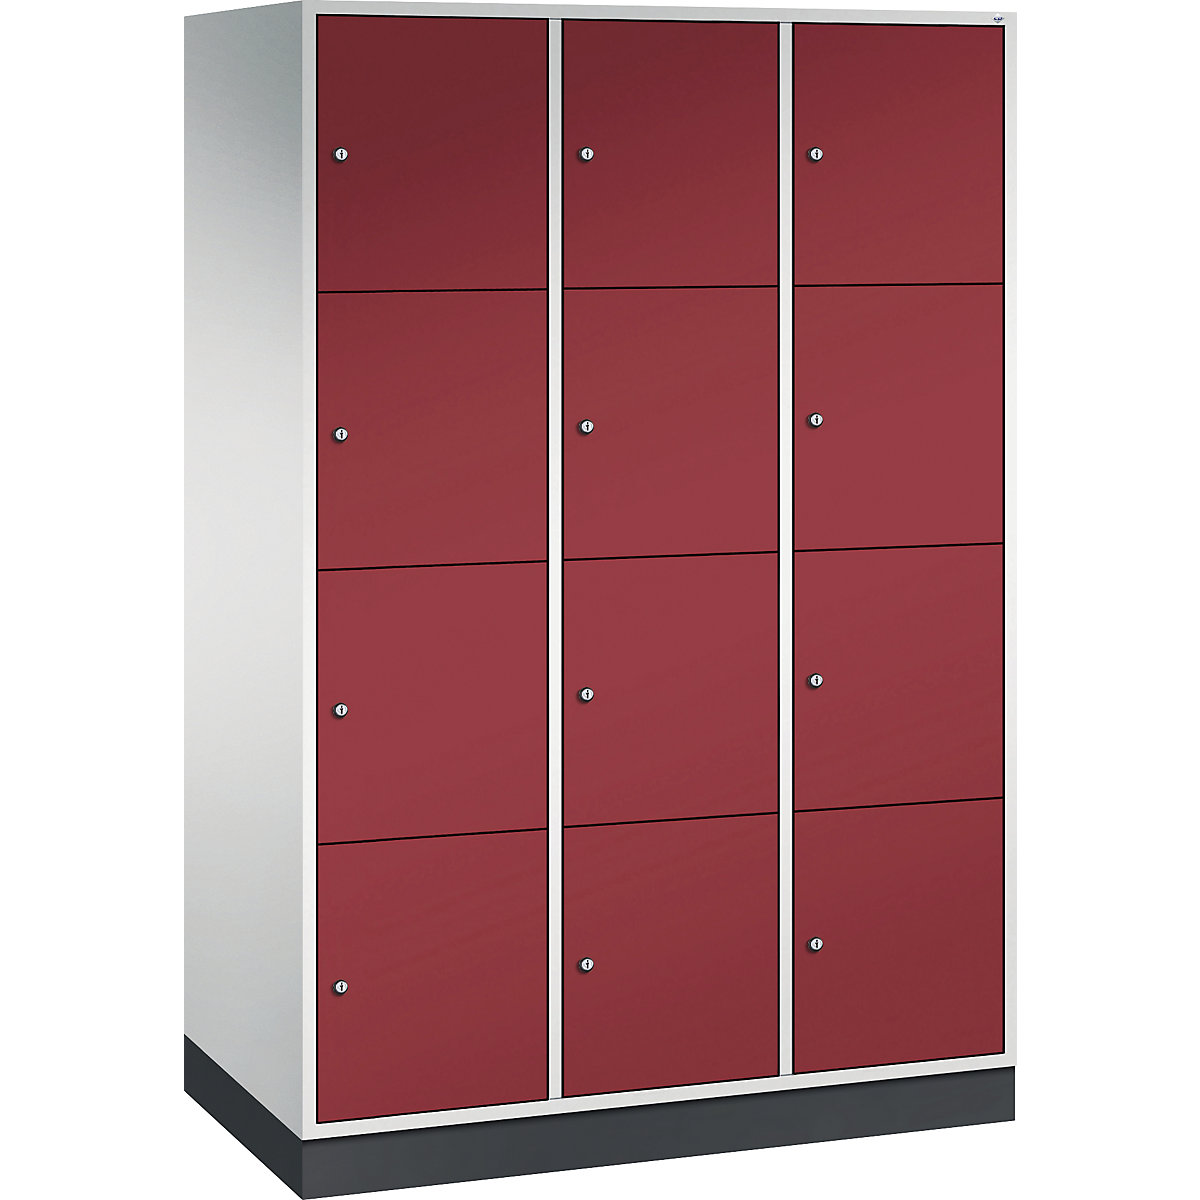 Vestiaire multicases en acier INTRO, casiers hauteur 435 mm – C+P, l x p 1220 x 600 mm, 12 casiers, corps gris clair, portes rouge rubis-4